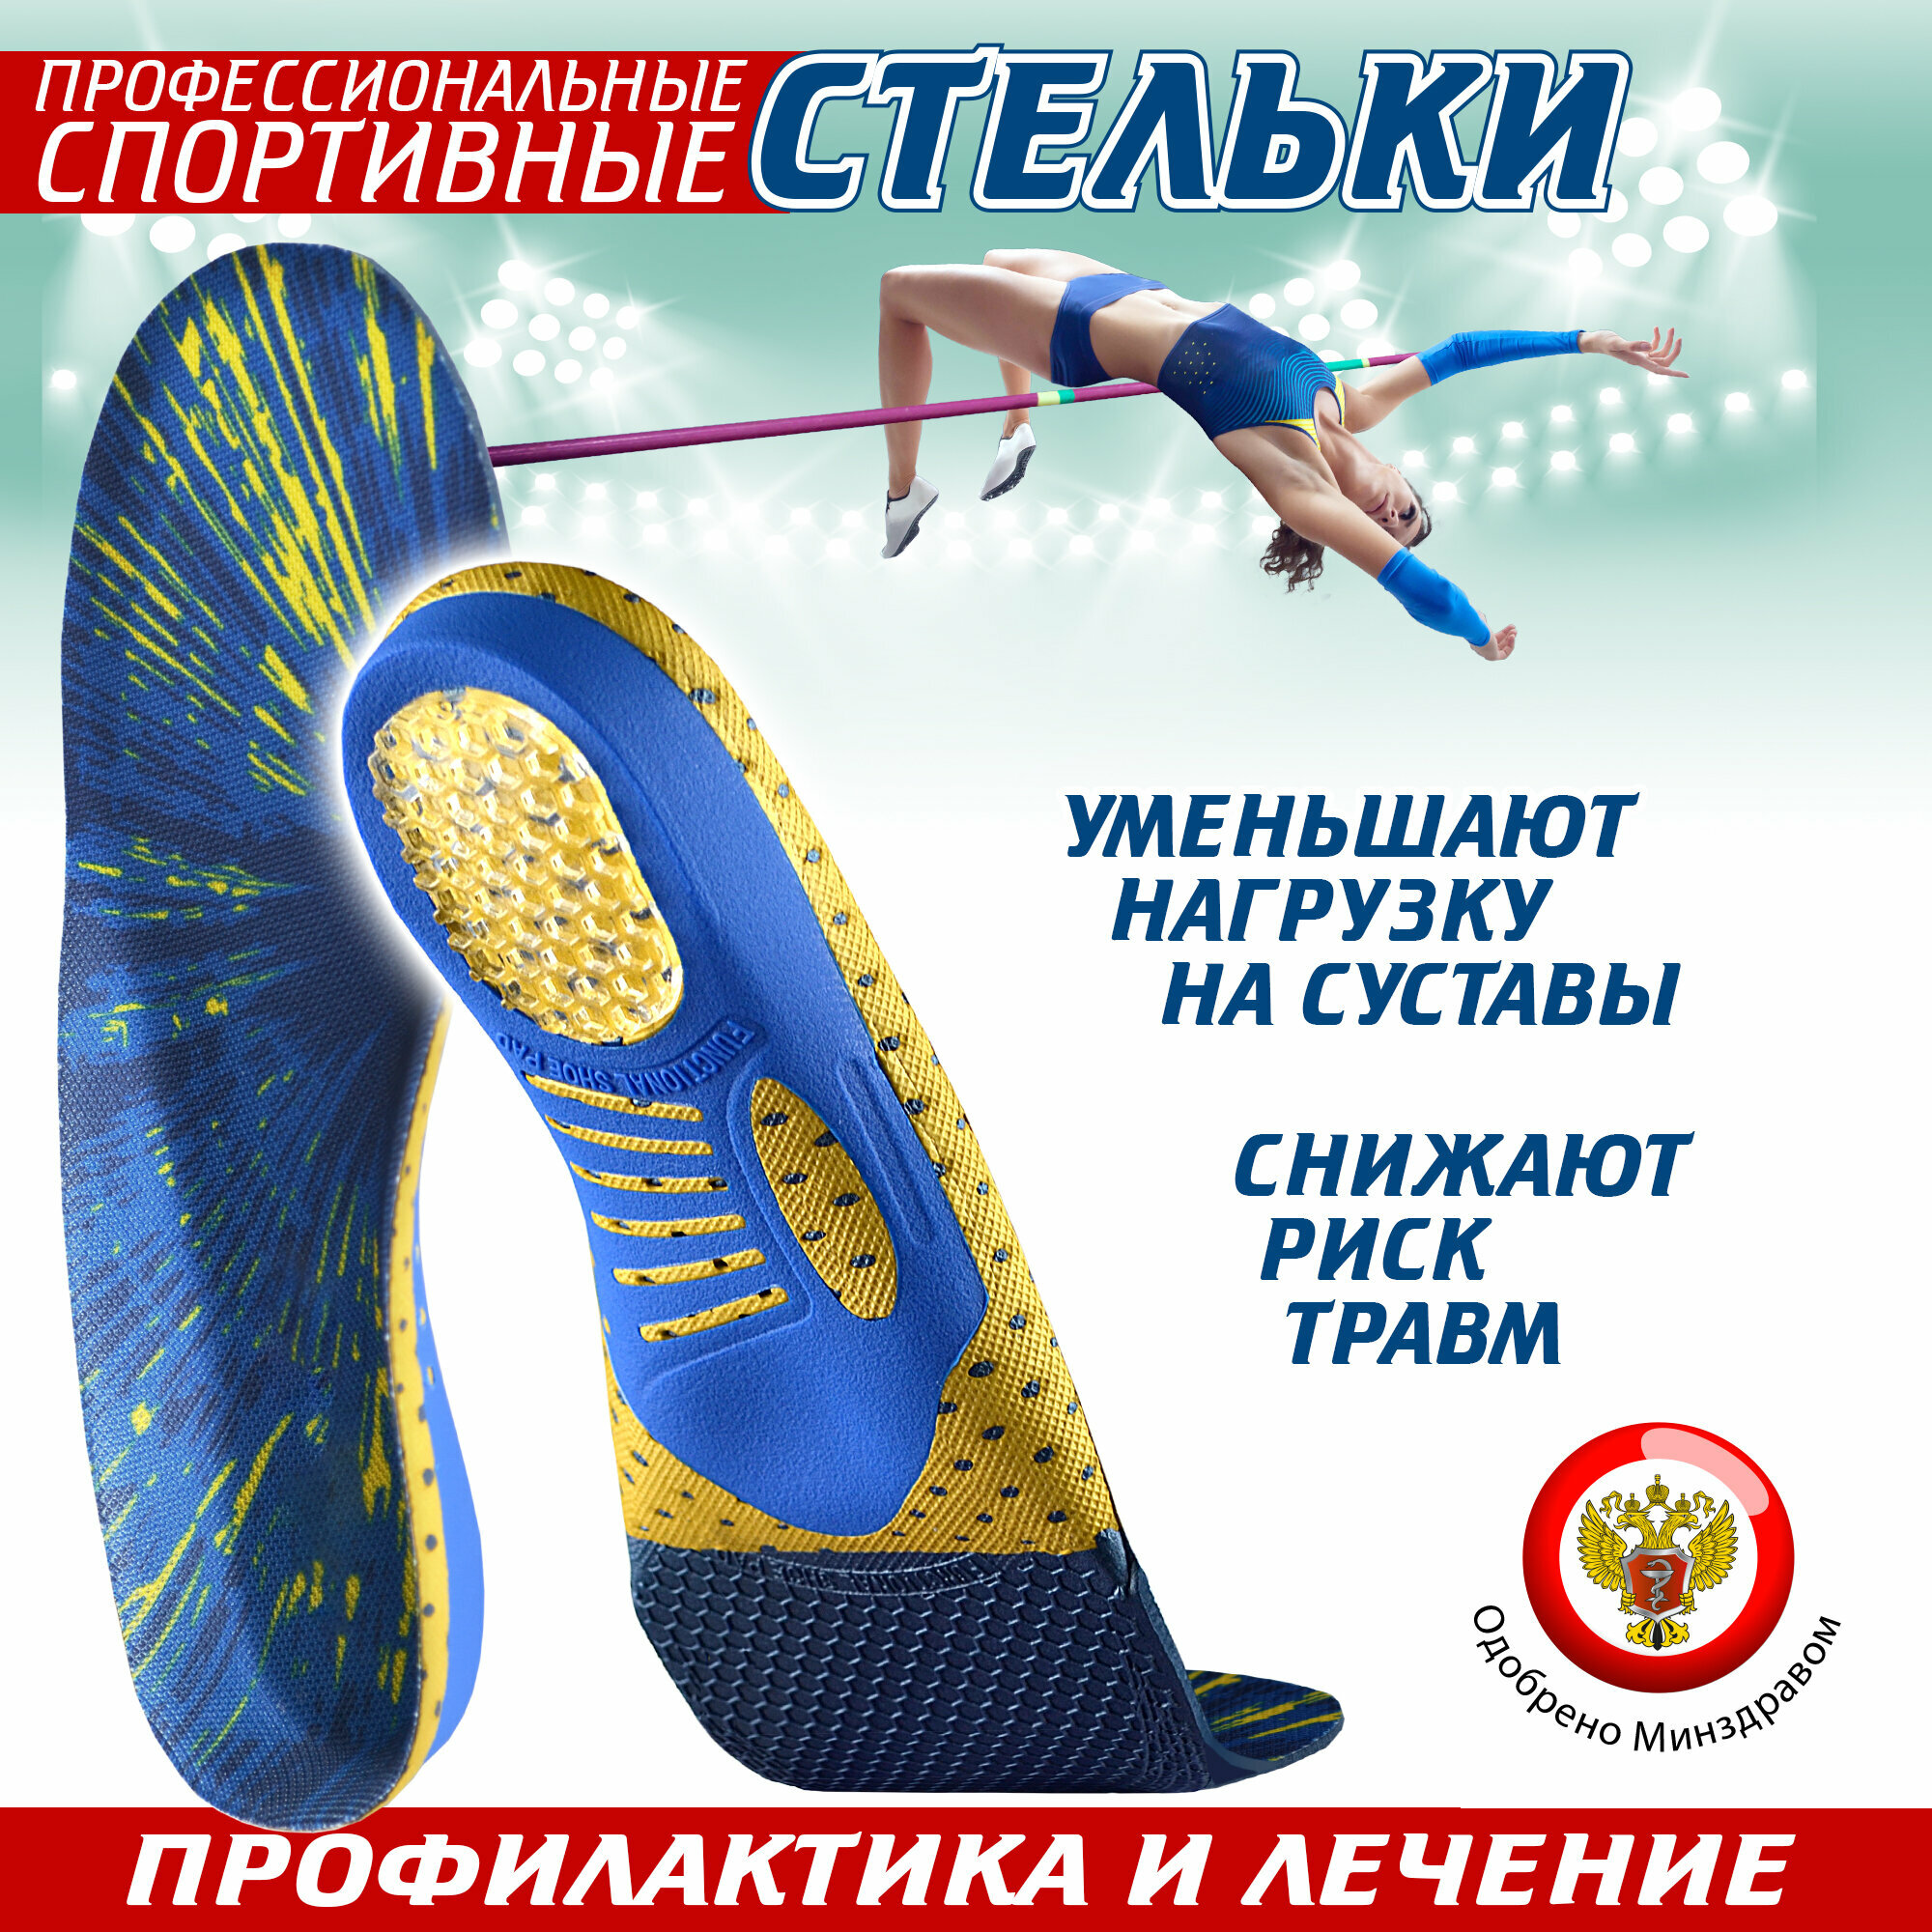 Ортопедические стельки спортивные Sport, для обуви, каркасные, 39